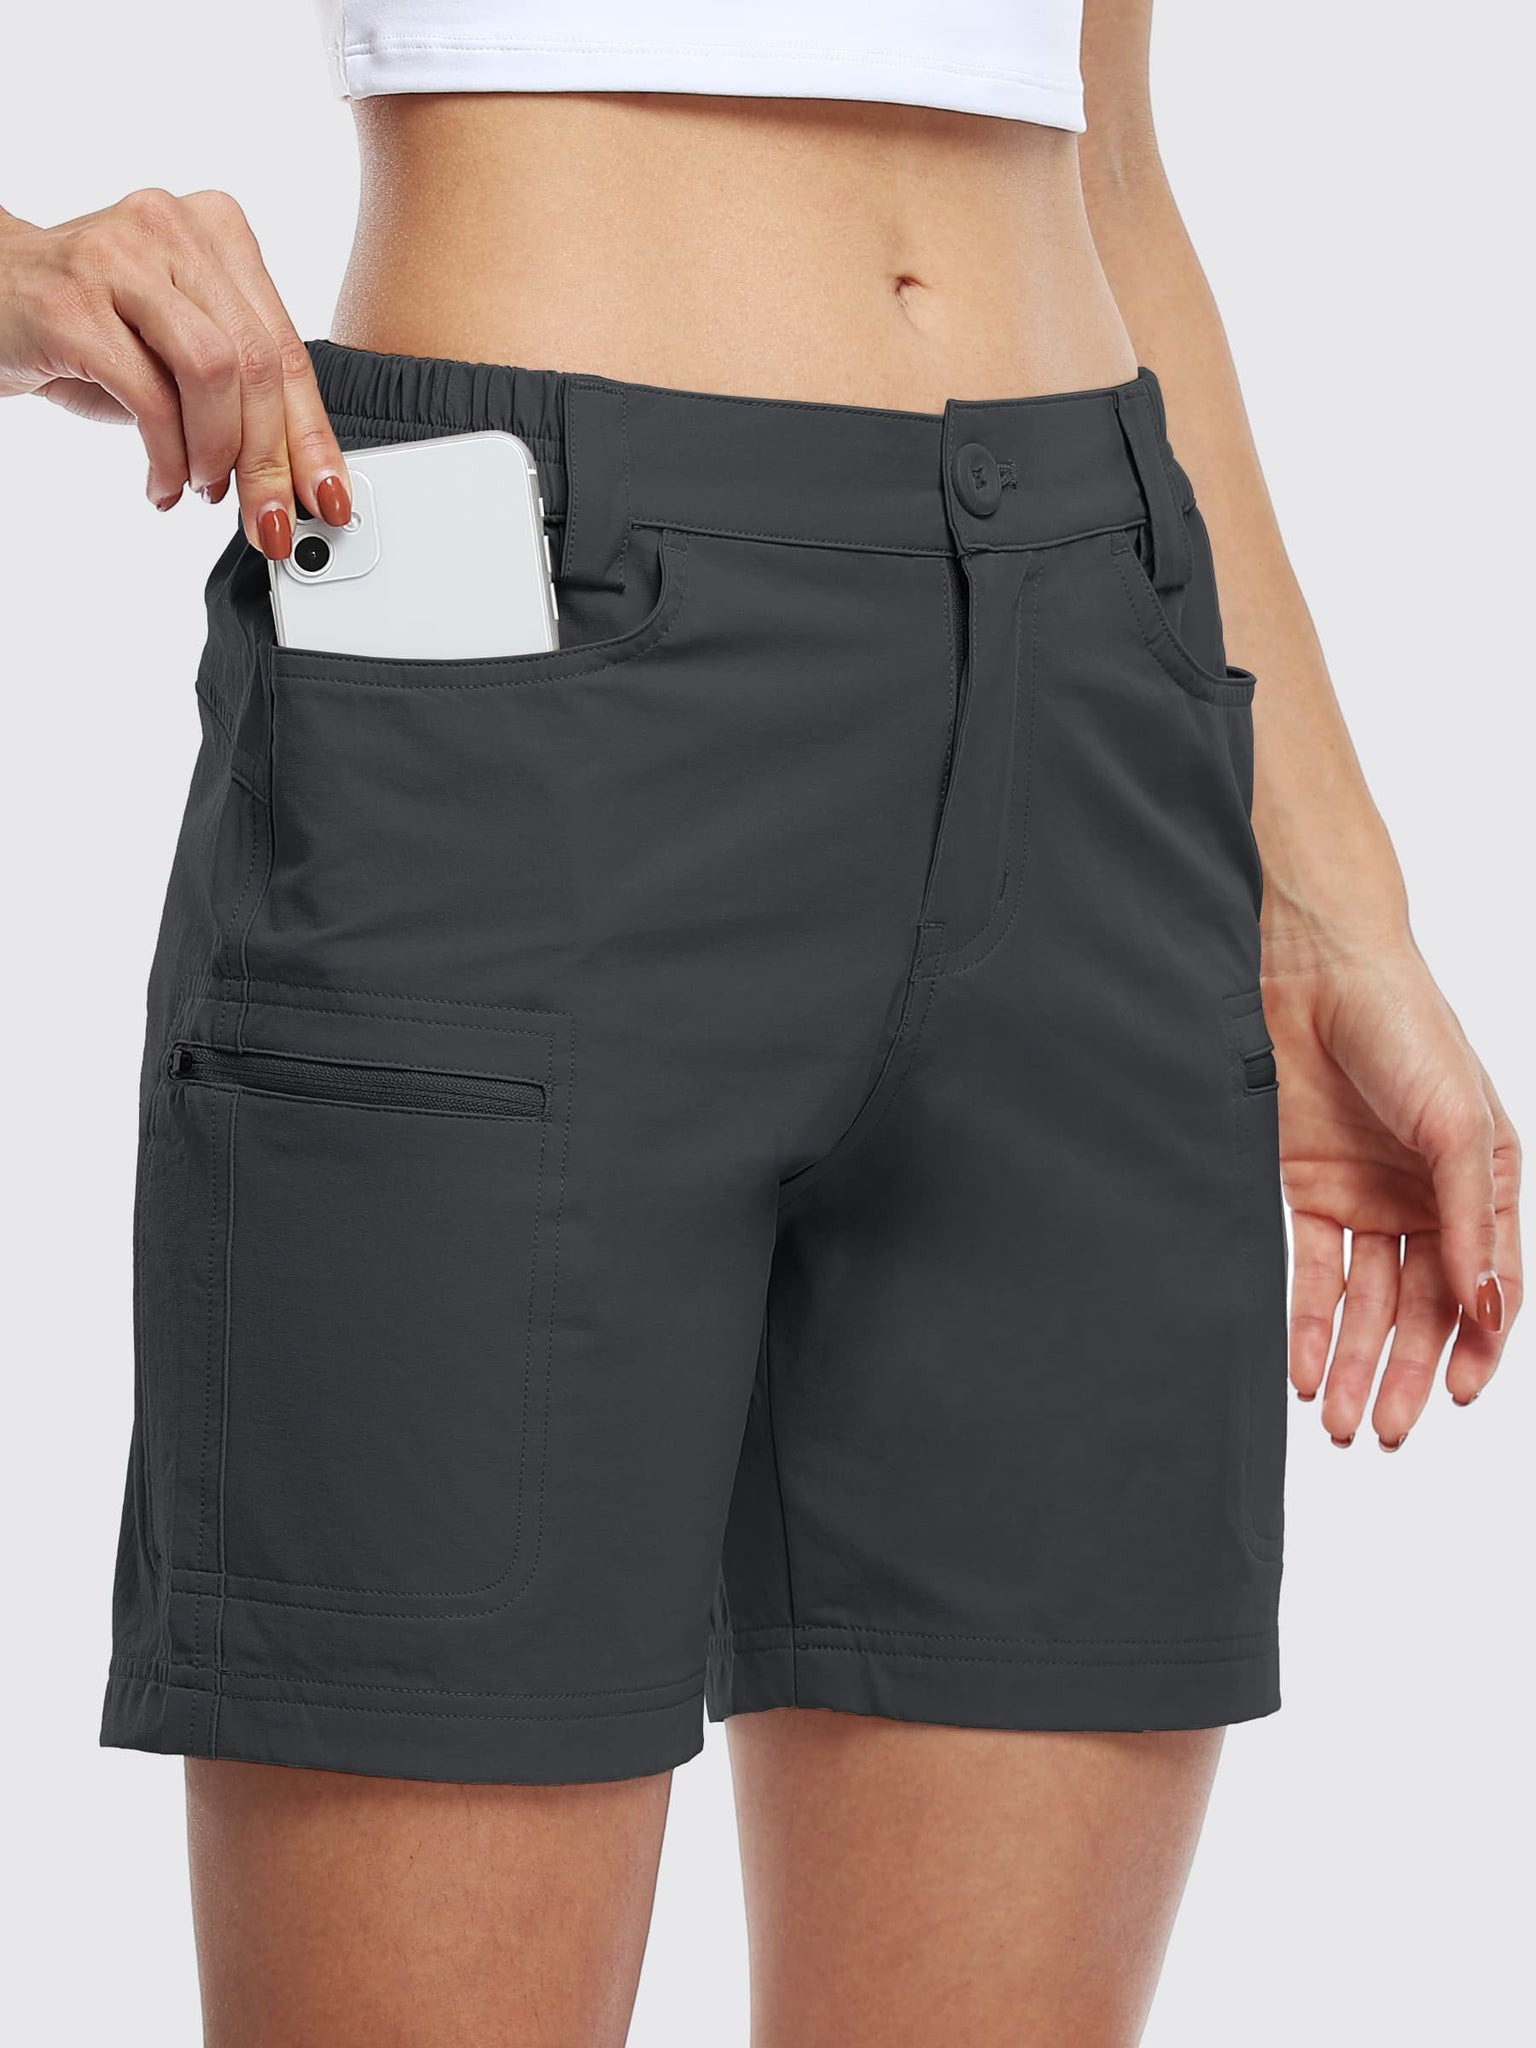 Willit Women's Outdoor Cargo Shorts 6 Inseam_DeepGray_model3